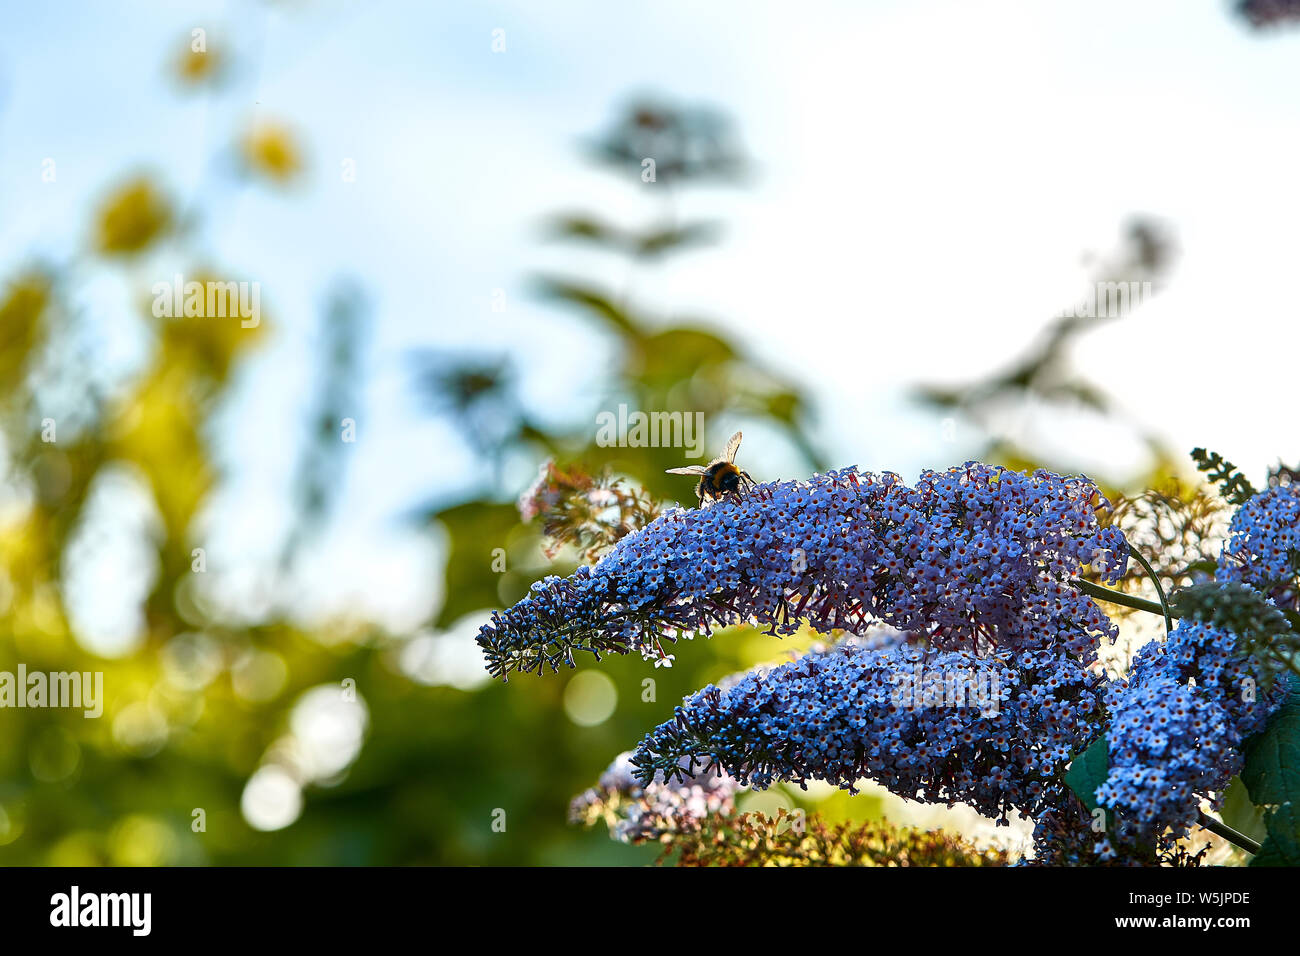 Eine Hummel (Gattung Bombus) mit seinem Rüssel Fütterung von einem sommerflieder Blütenblatt. Stockfoto